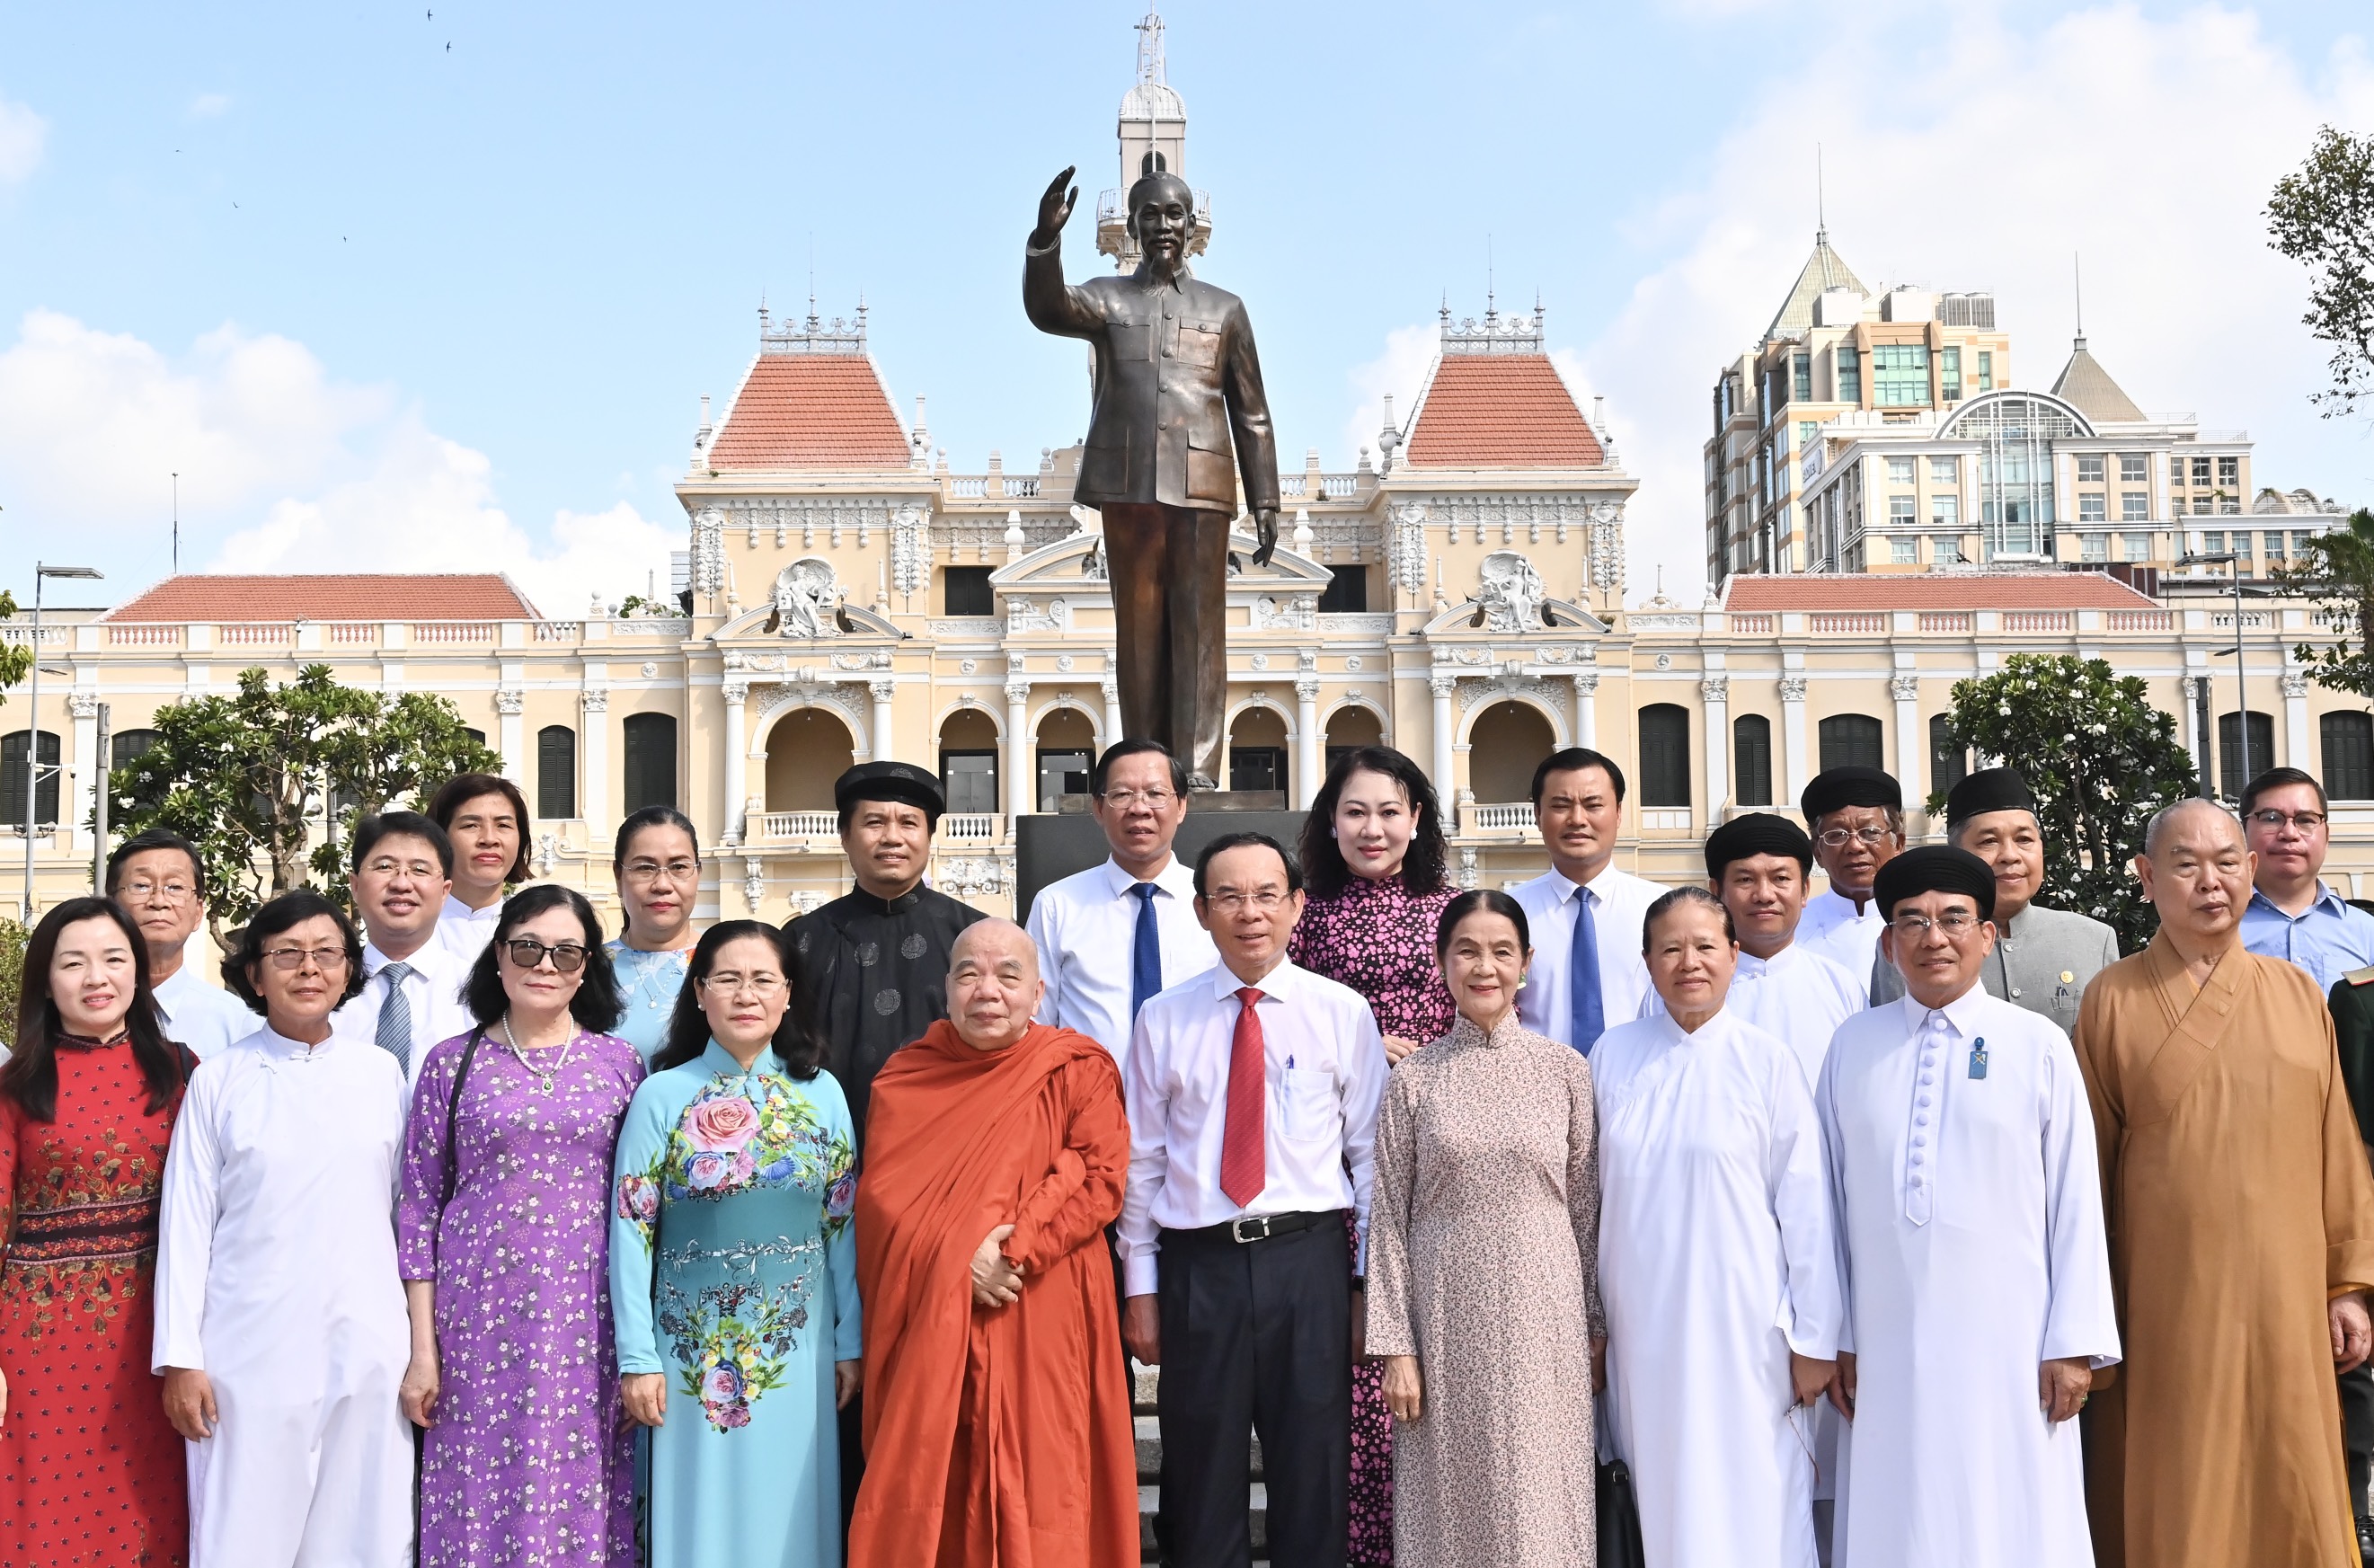 Đoàn đại biểu TP. Hồ Chí Minh chụp hình lưu niệm tại Công viên Tượng đài Chủ tịch Hồ Chí Minh, đường Nguyễn Huệ, quận 1 (Ảnh: Việt Dũng).